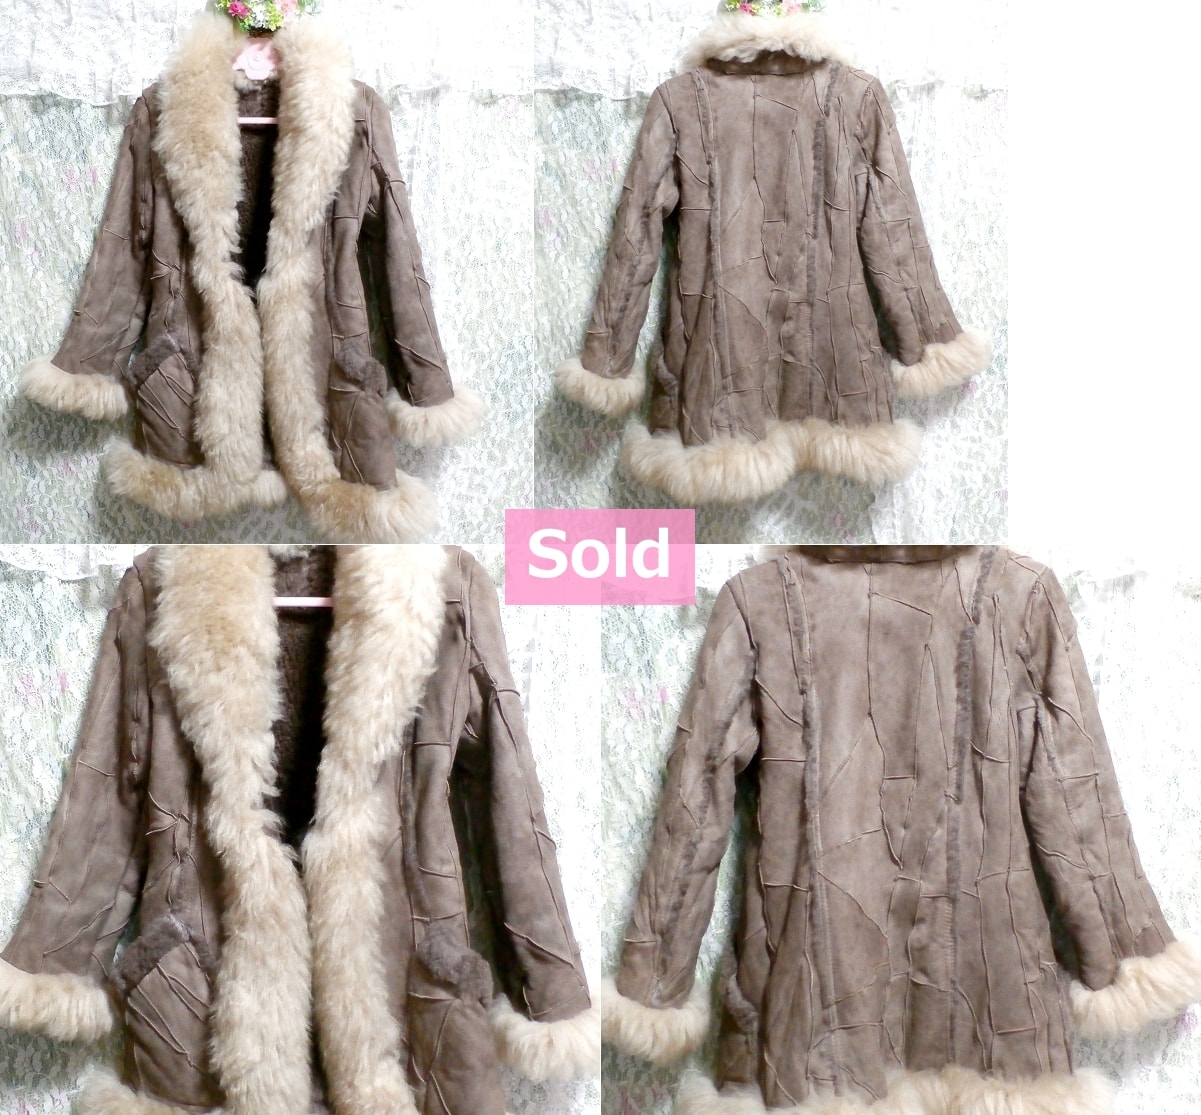 ムートン羊毛皮100%亜麻色とアイボリー色の豪華ファーコート/アウター Mouton wool 100% luxurious fur coat/ivory color fur coat/outer